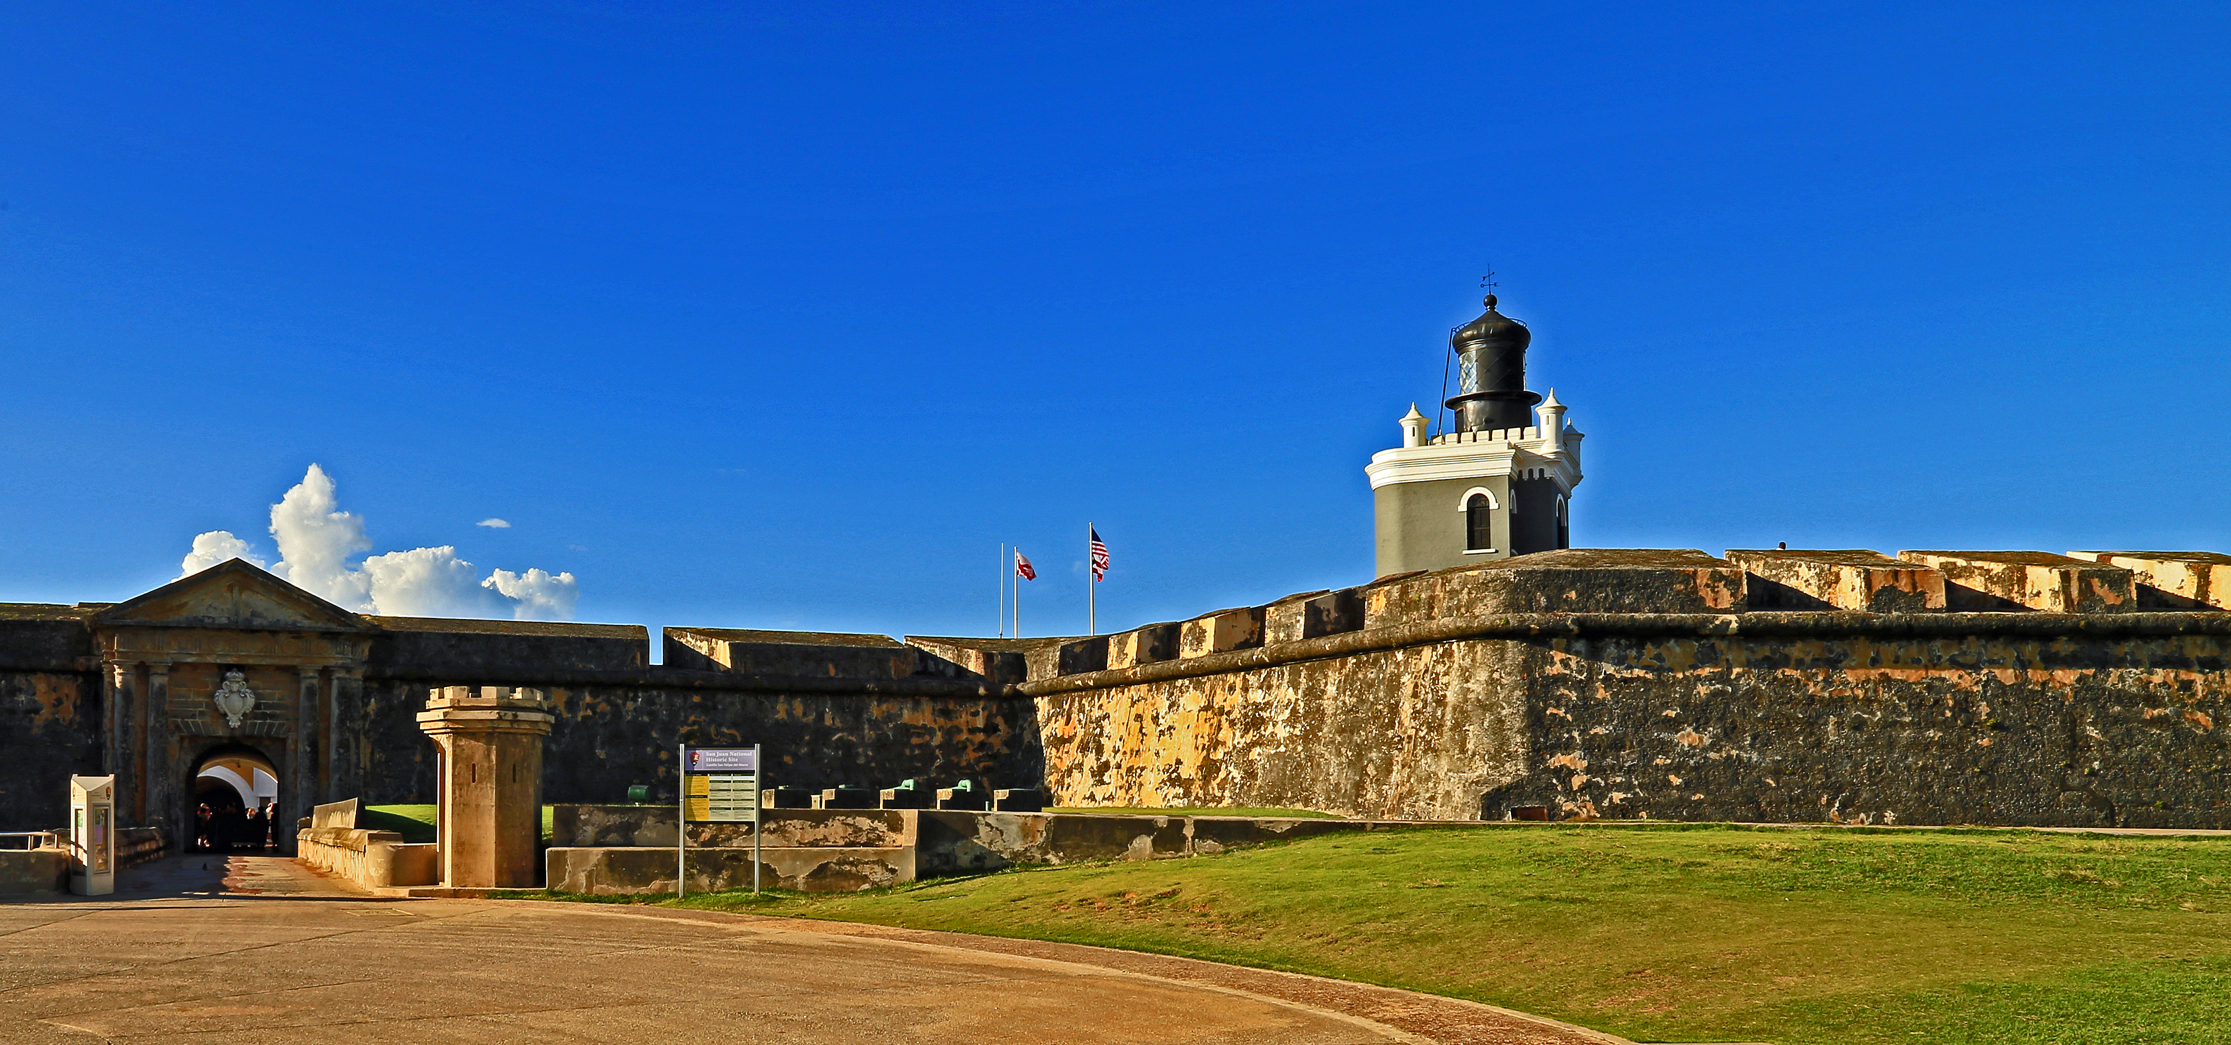 Puerto Rico - Old San Juan - El Morro - The Entrance